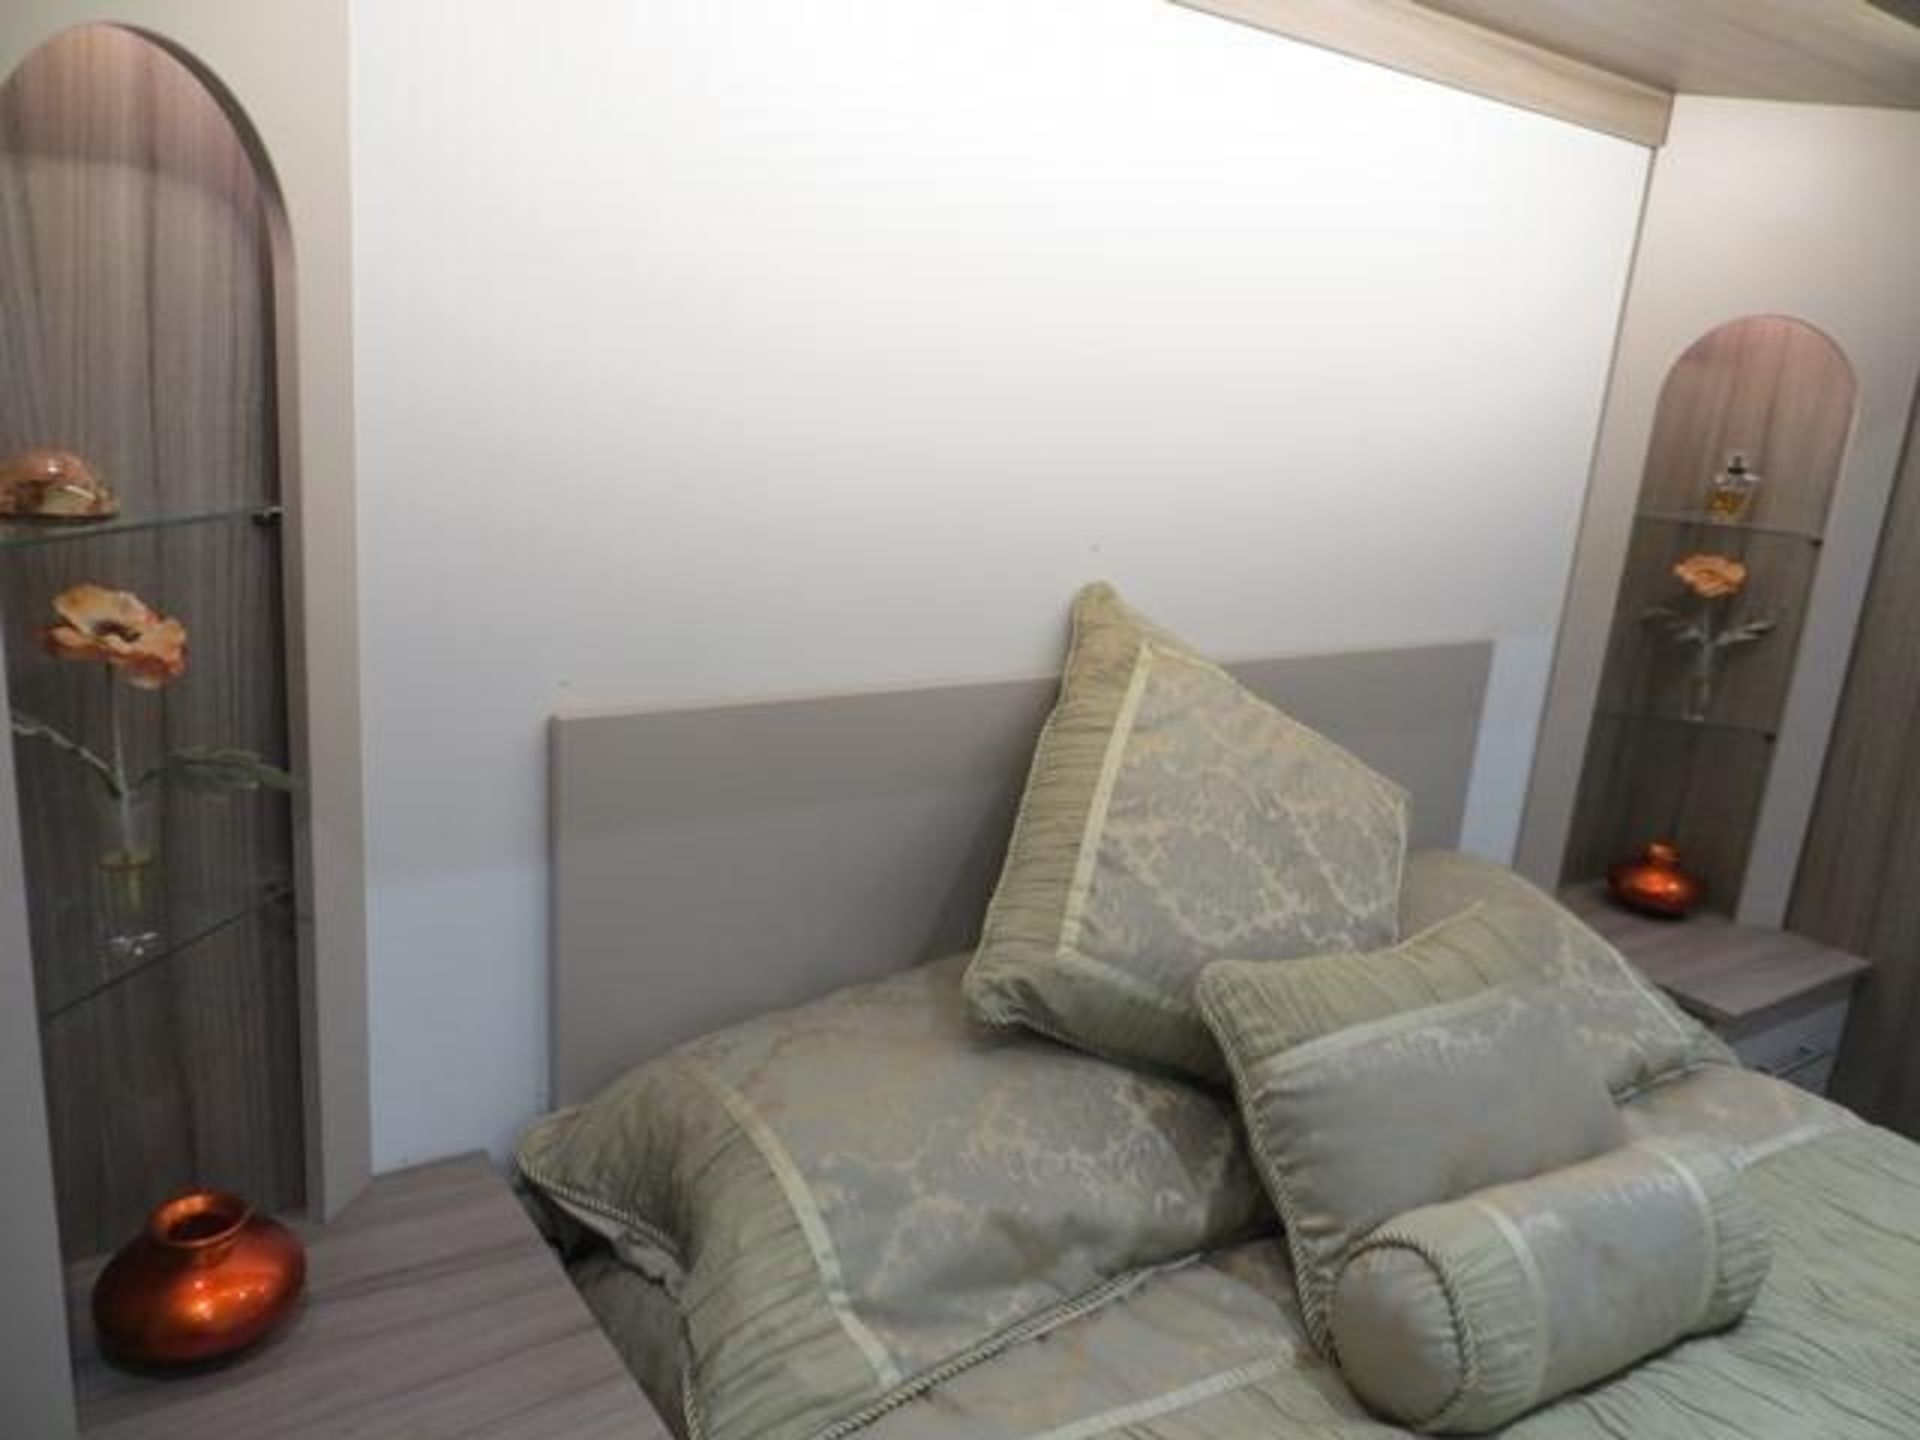 Bespoke installation bedroom suite comprising: 2-door wardrobe, 5-door bridge above bed with 2 bedsi - Image 5 of 11